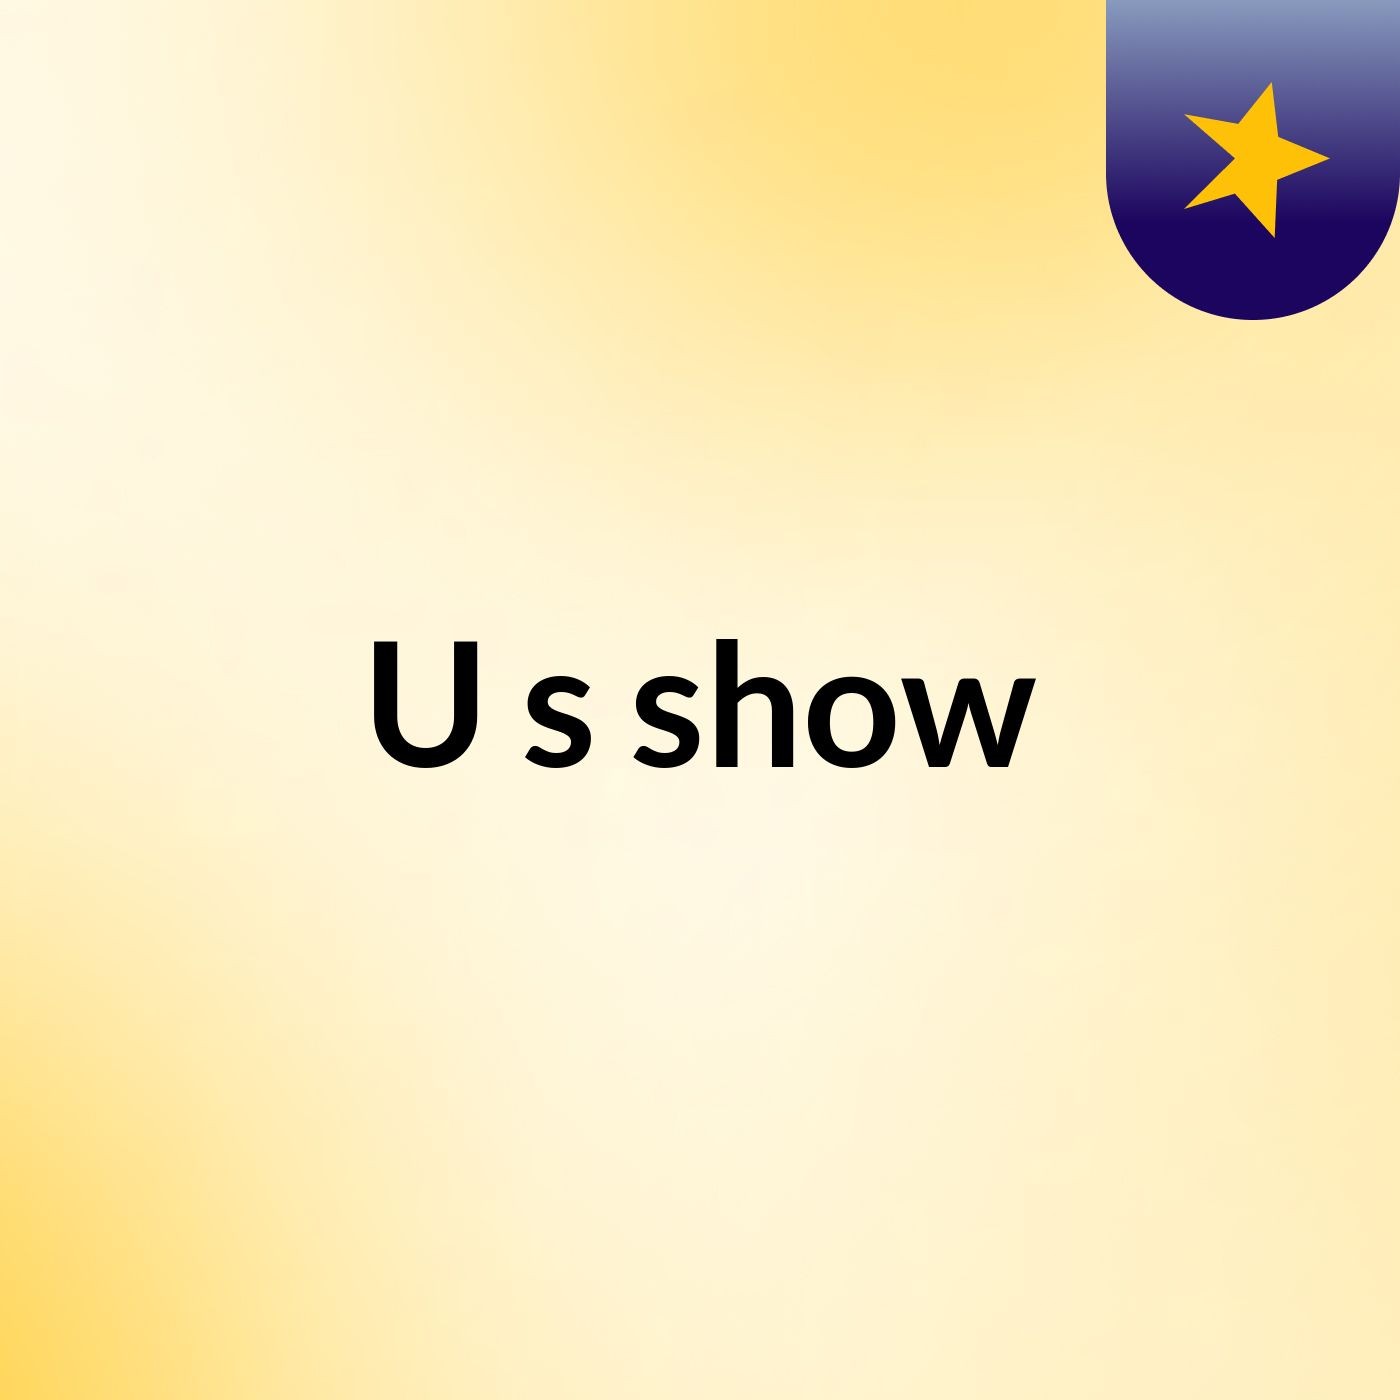 U's show